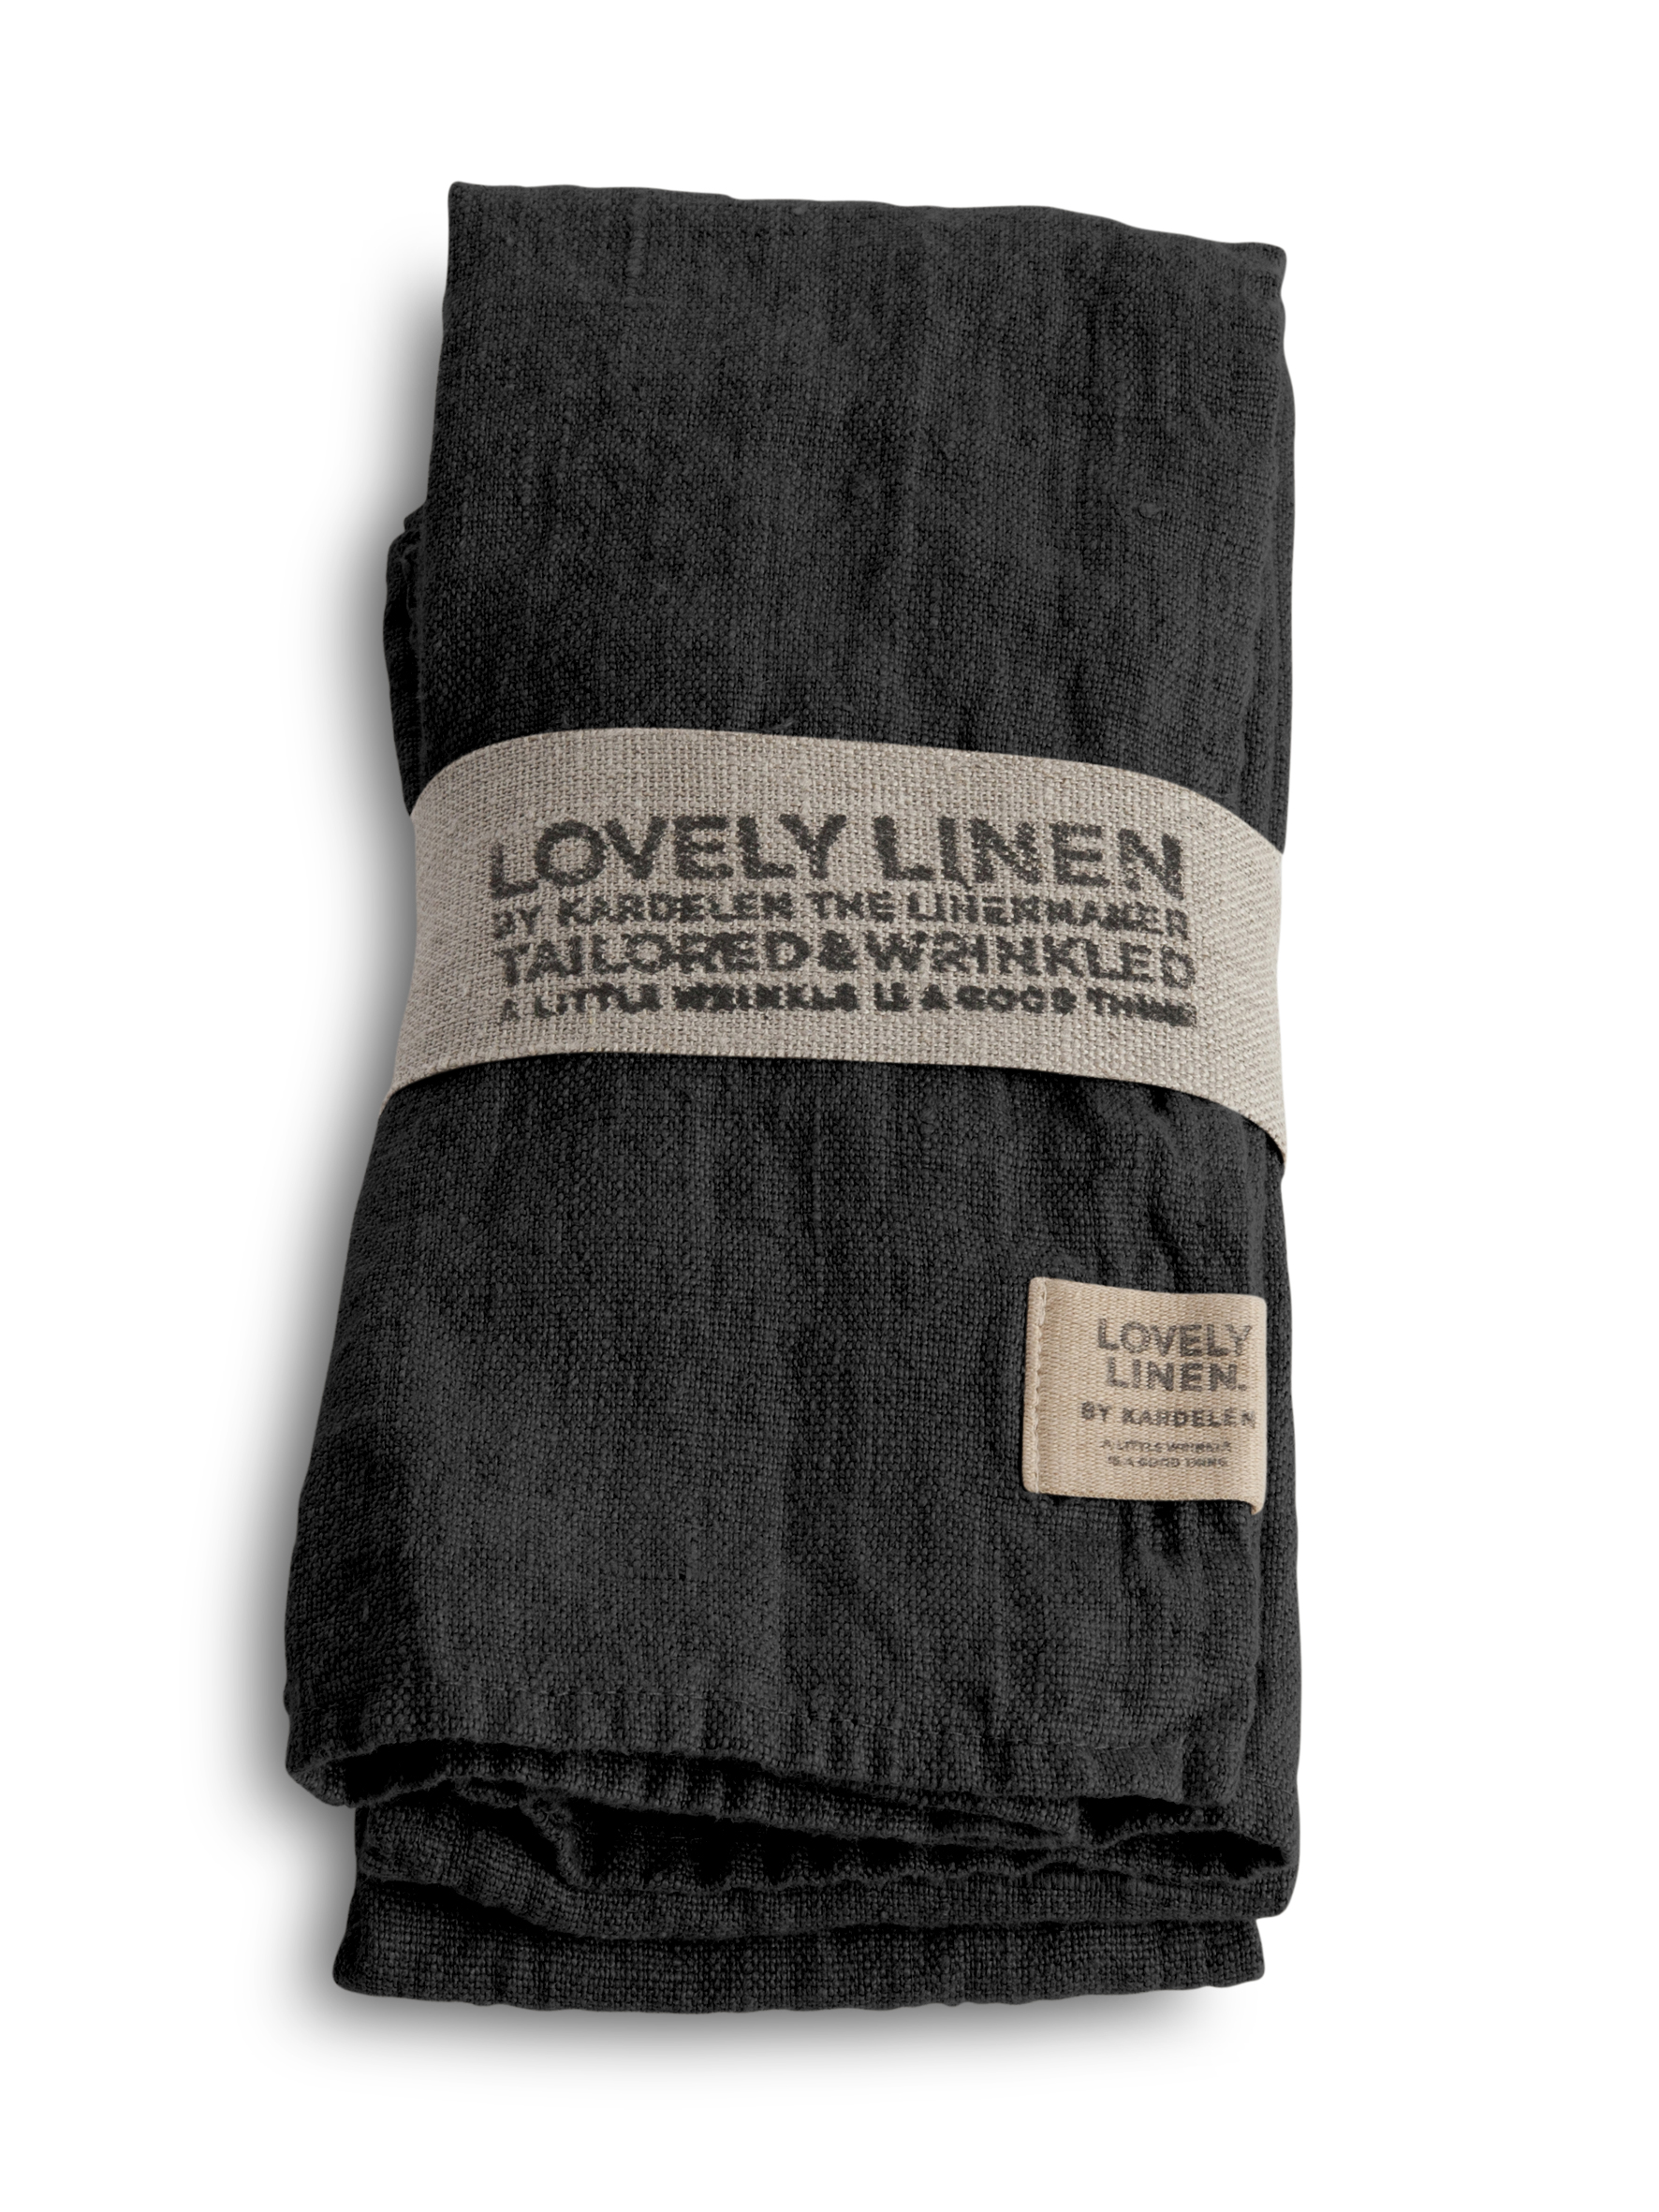 Lovely Linen 100% European Linen Table Napkin in Dark Grey